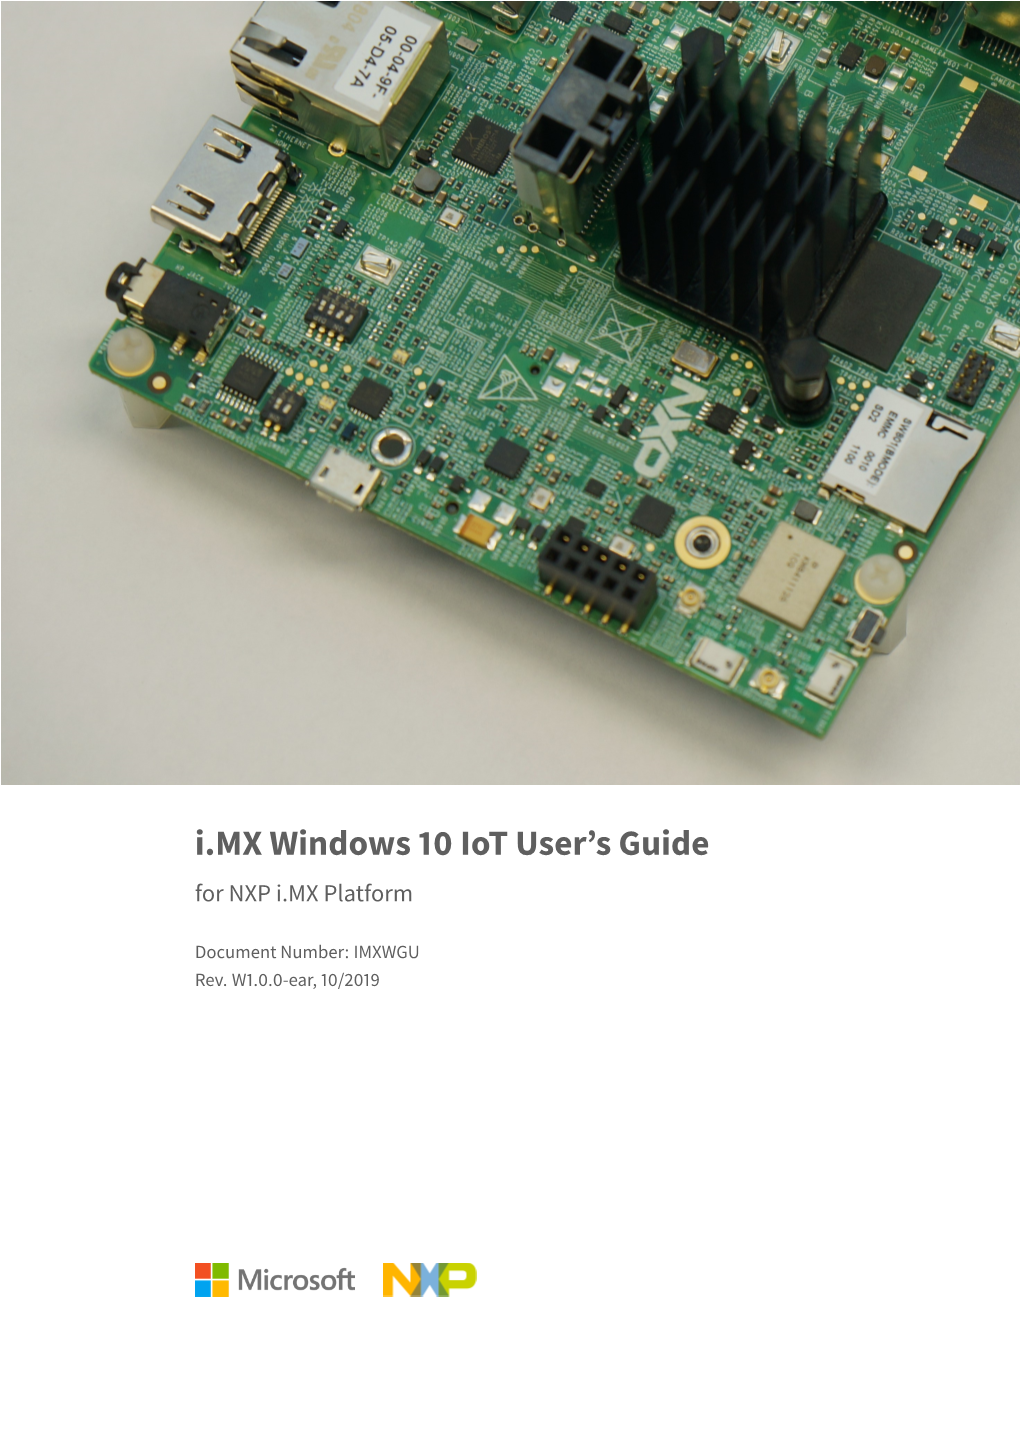 I.MX Windows 10 Iot User's Guide